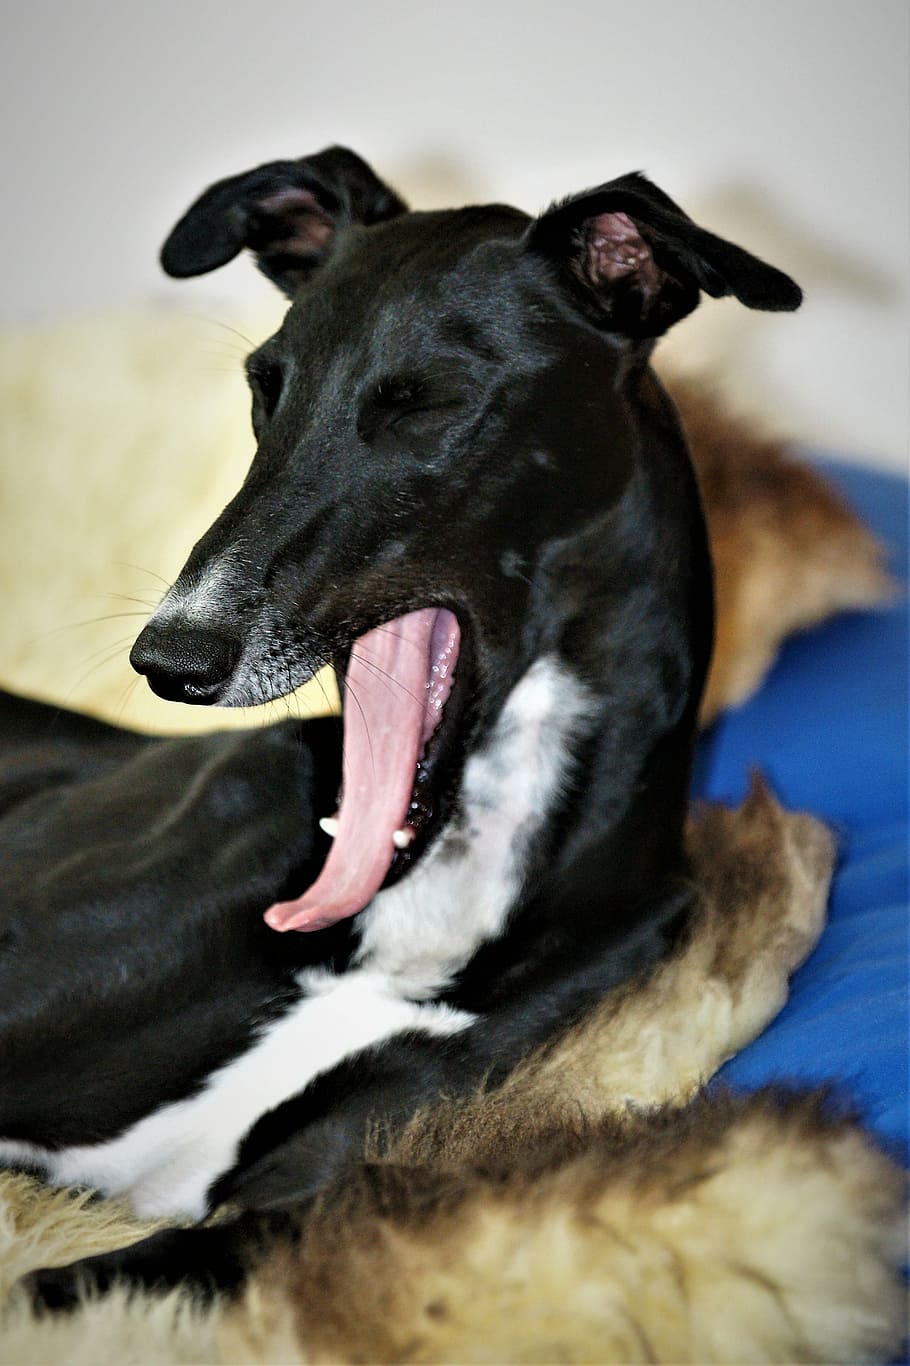 dog, galgo, greyhound, yawn, portrait, dog head, galgo espaniol, canine, pets, domestic animals